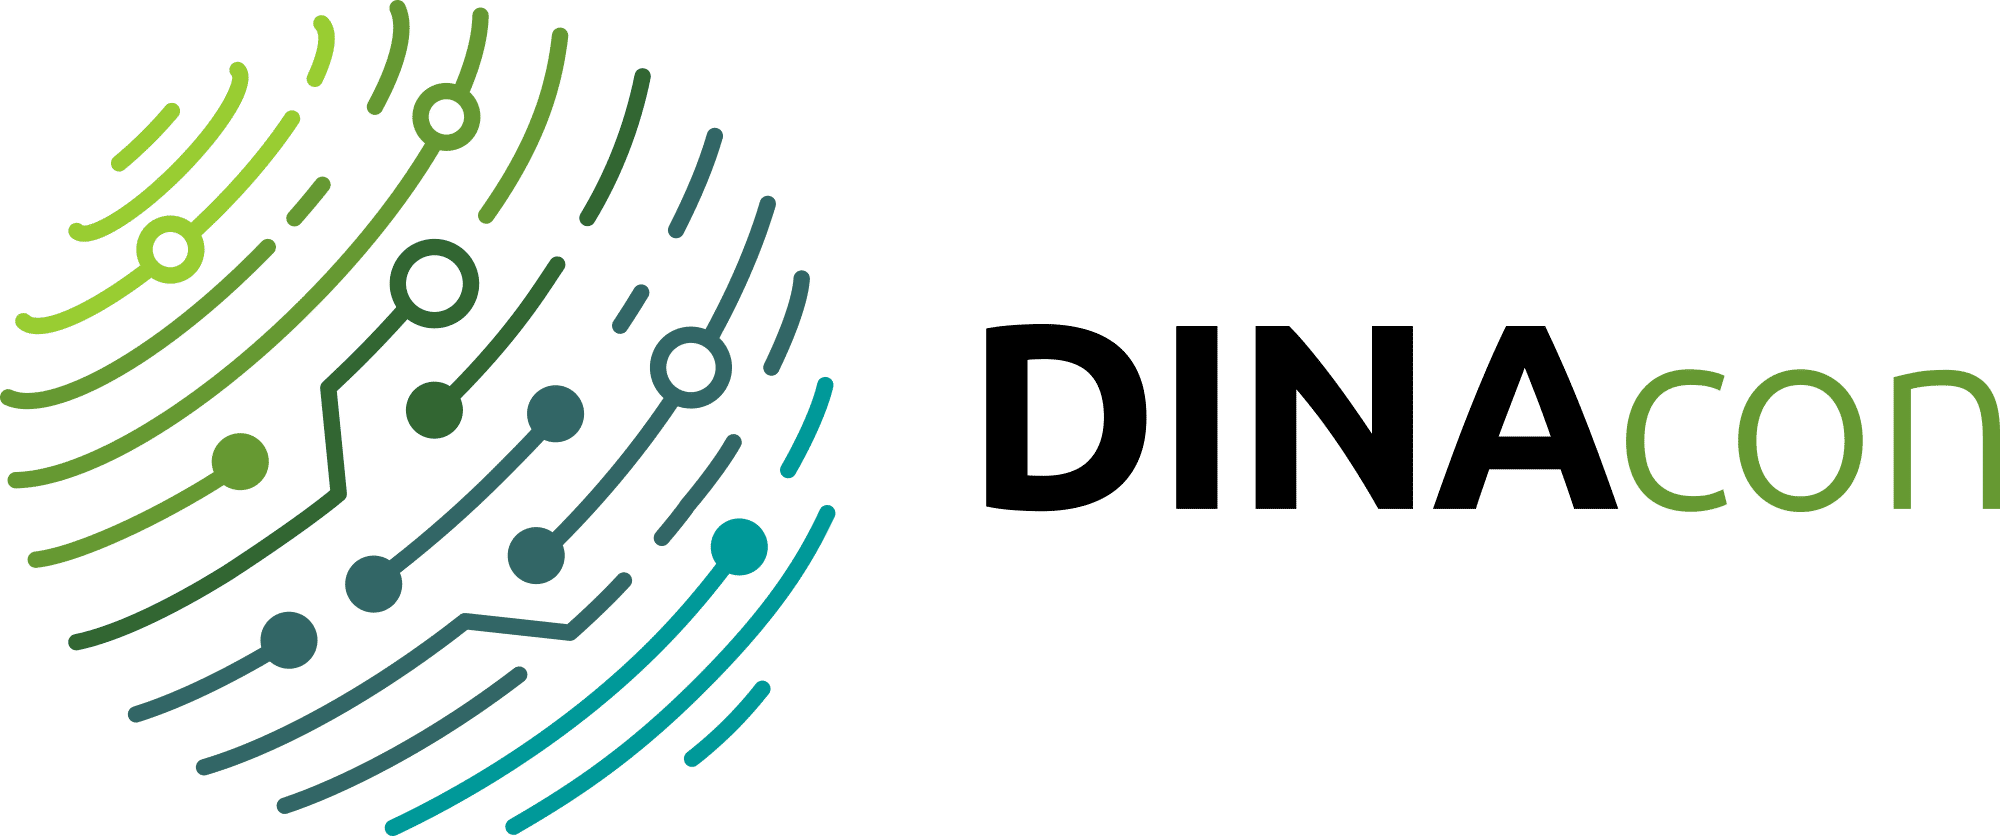 dinacon logo